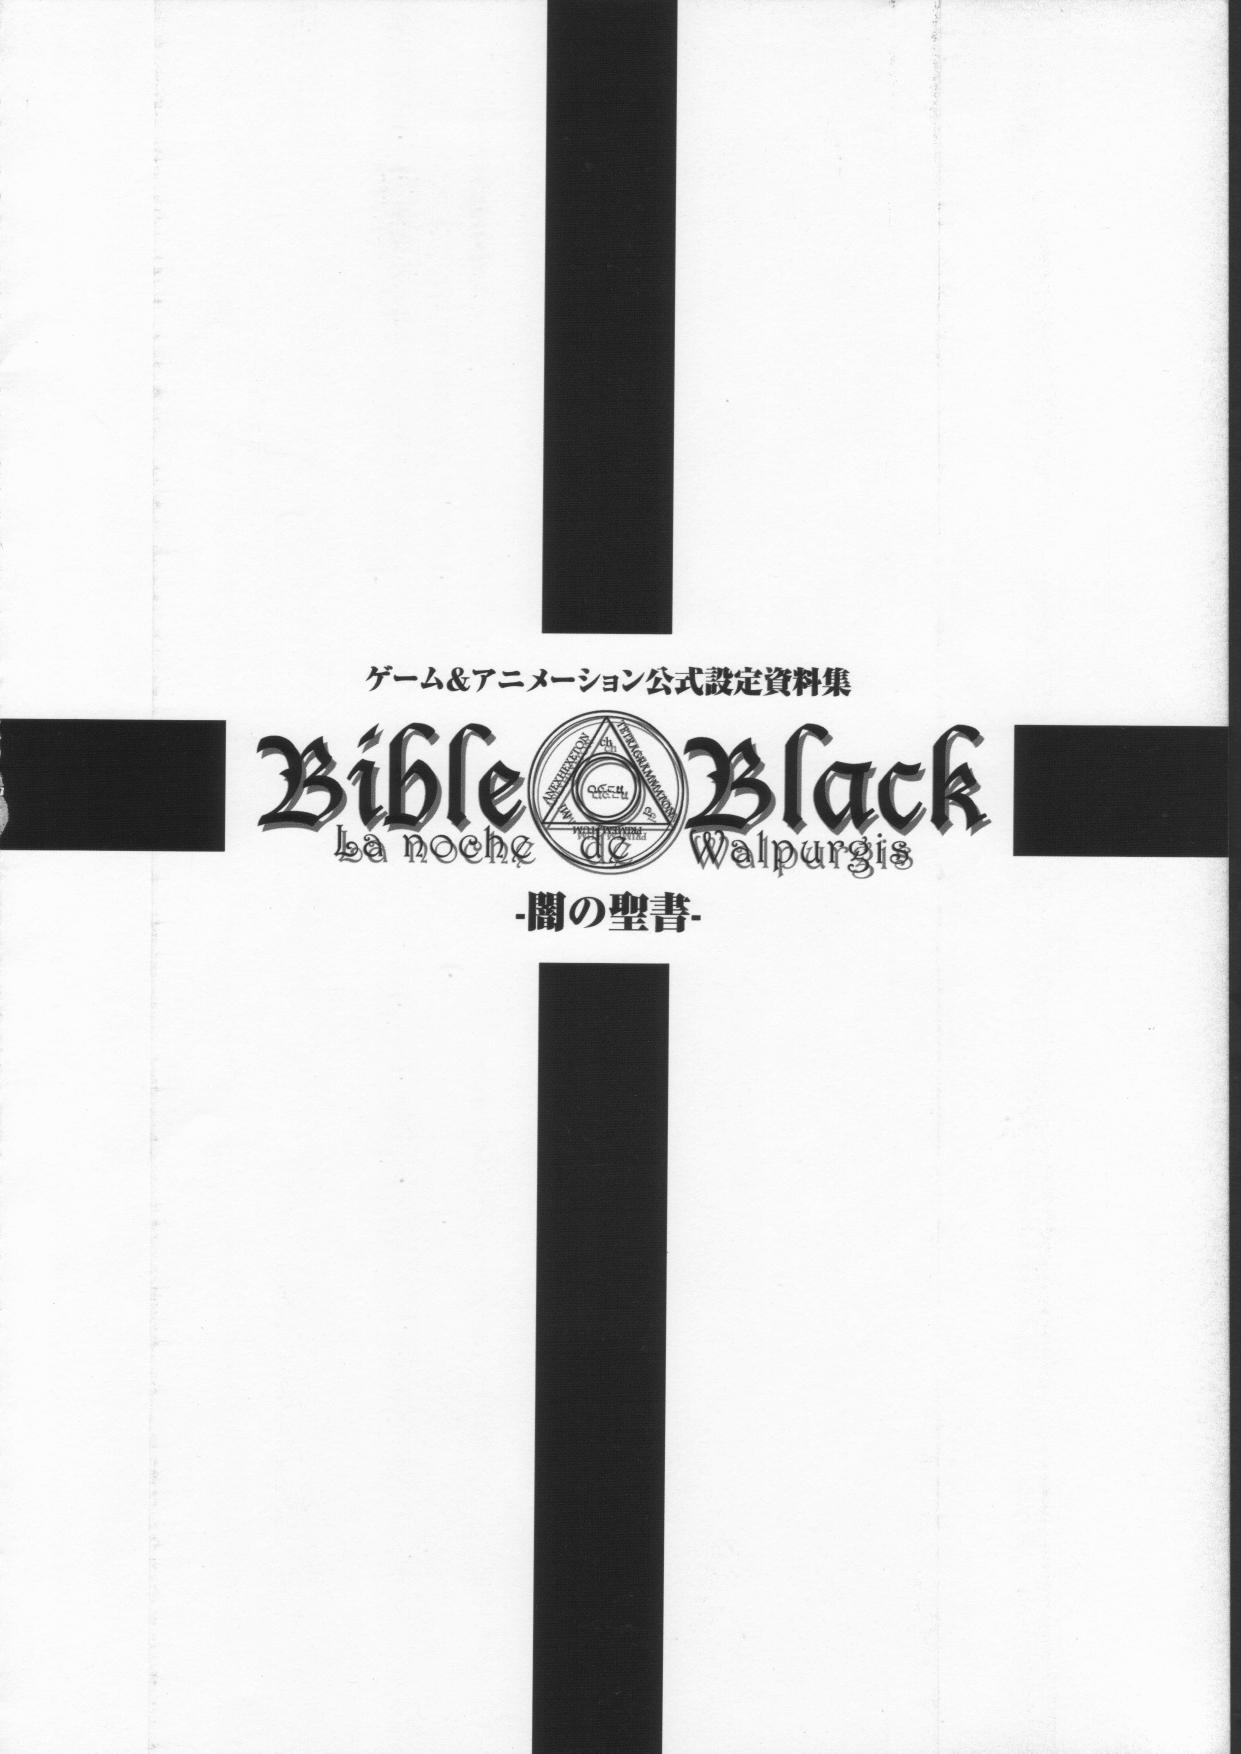 Bible Black バイブルブラック ゲーム&アニメーション公式設定資料集 15